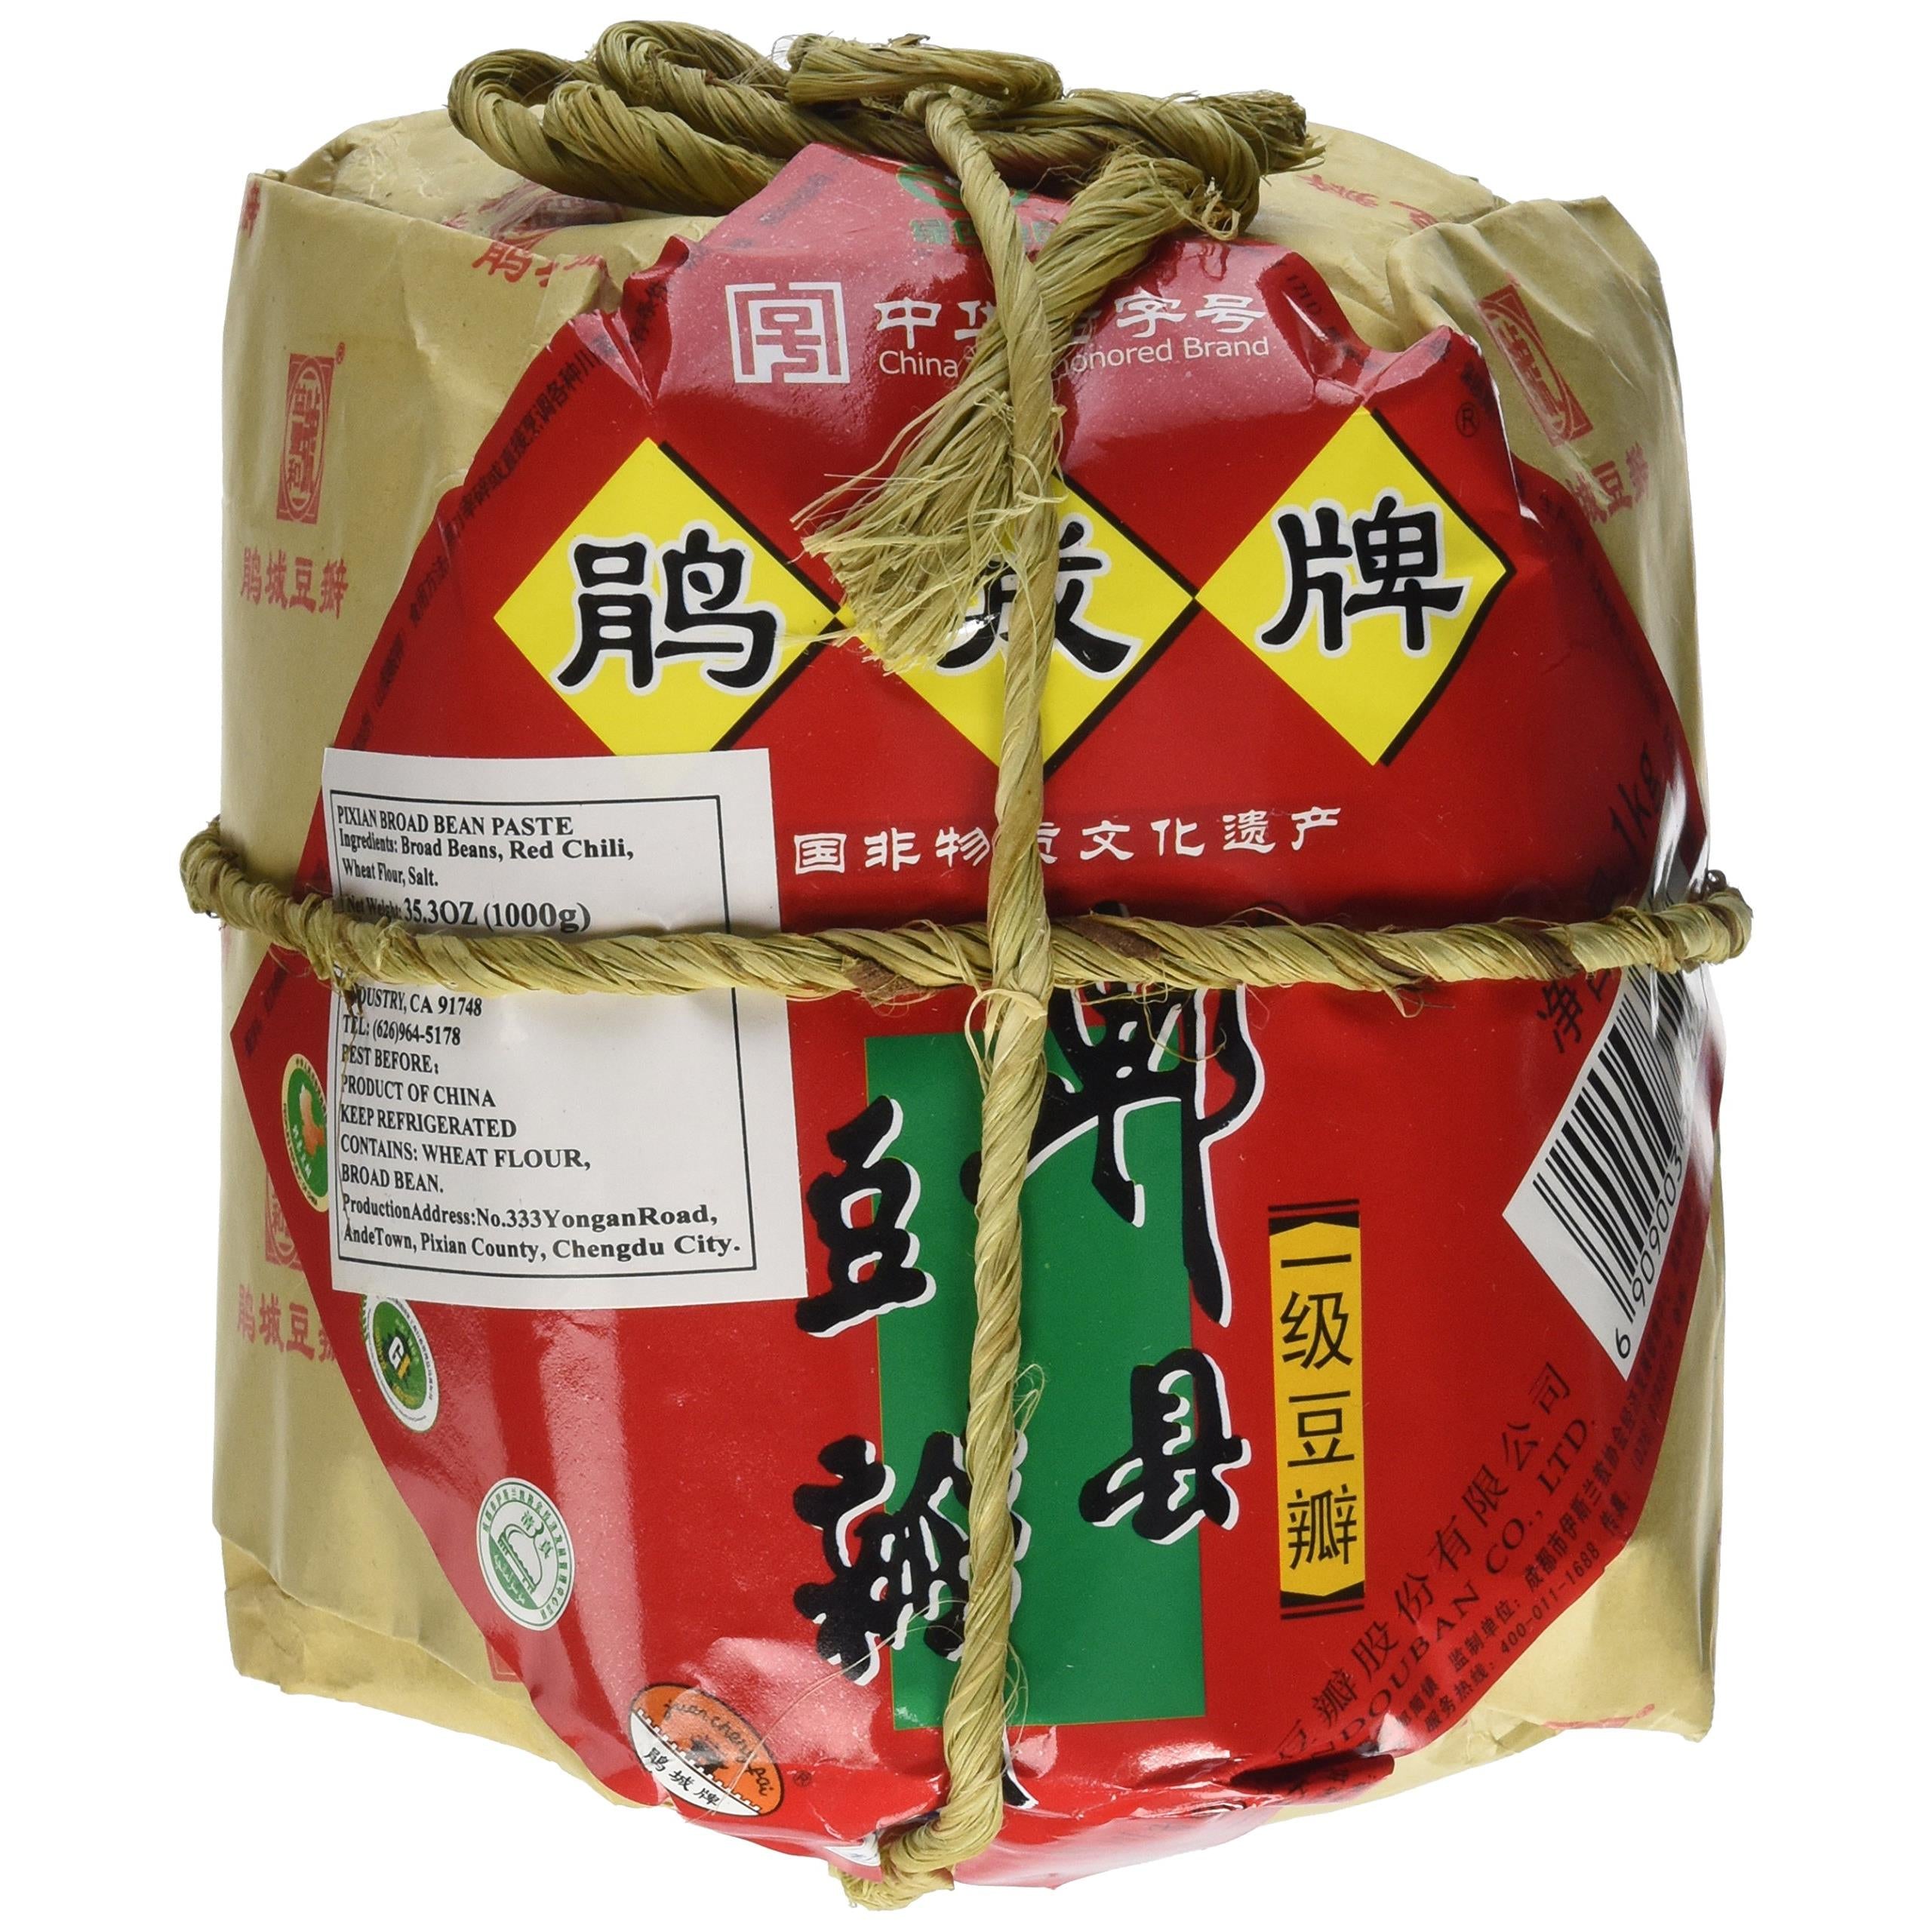 Pixian Sichuan Pi Xian Broad Bean Paste, 35oz